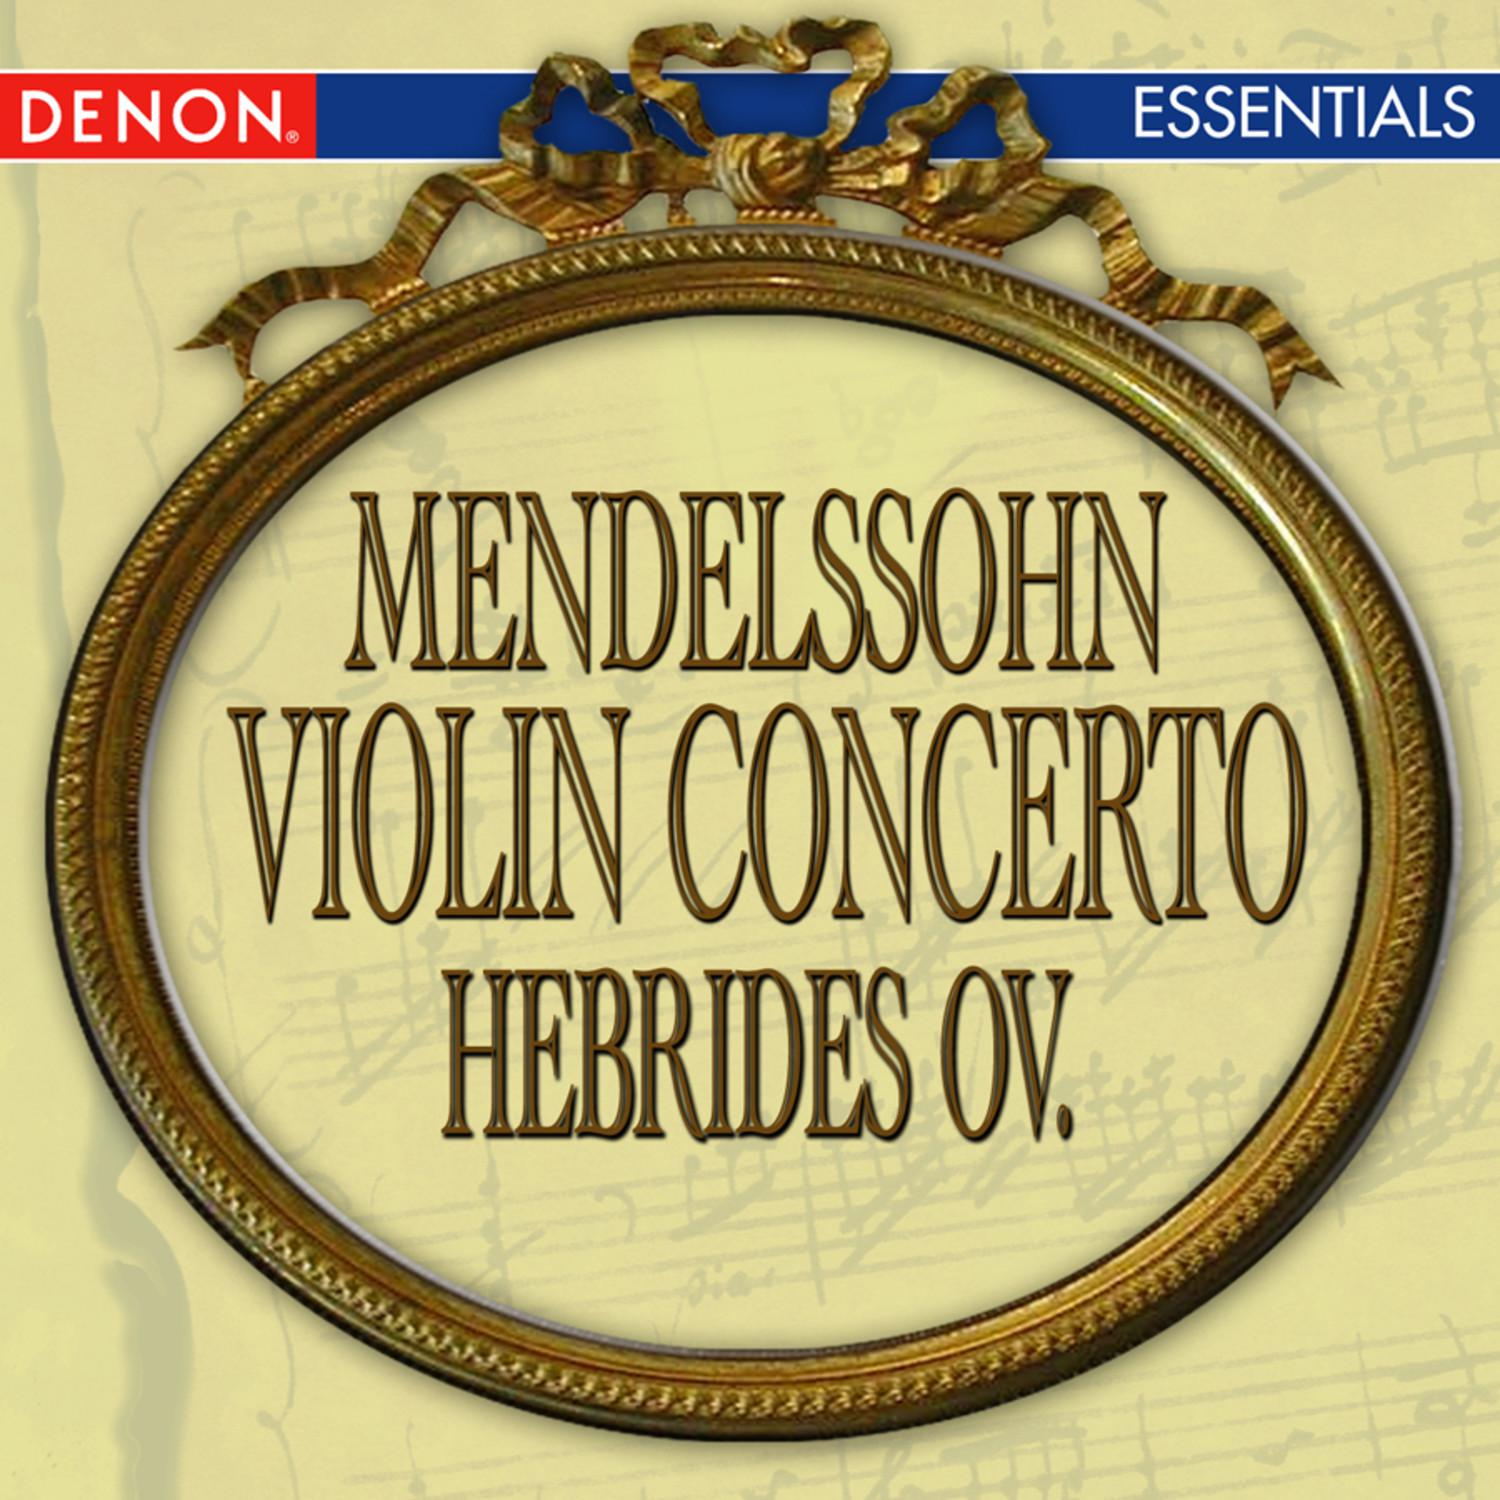 Mendelssohn: Violin Concerto - Hebrides Overture